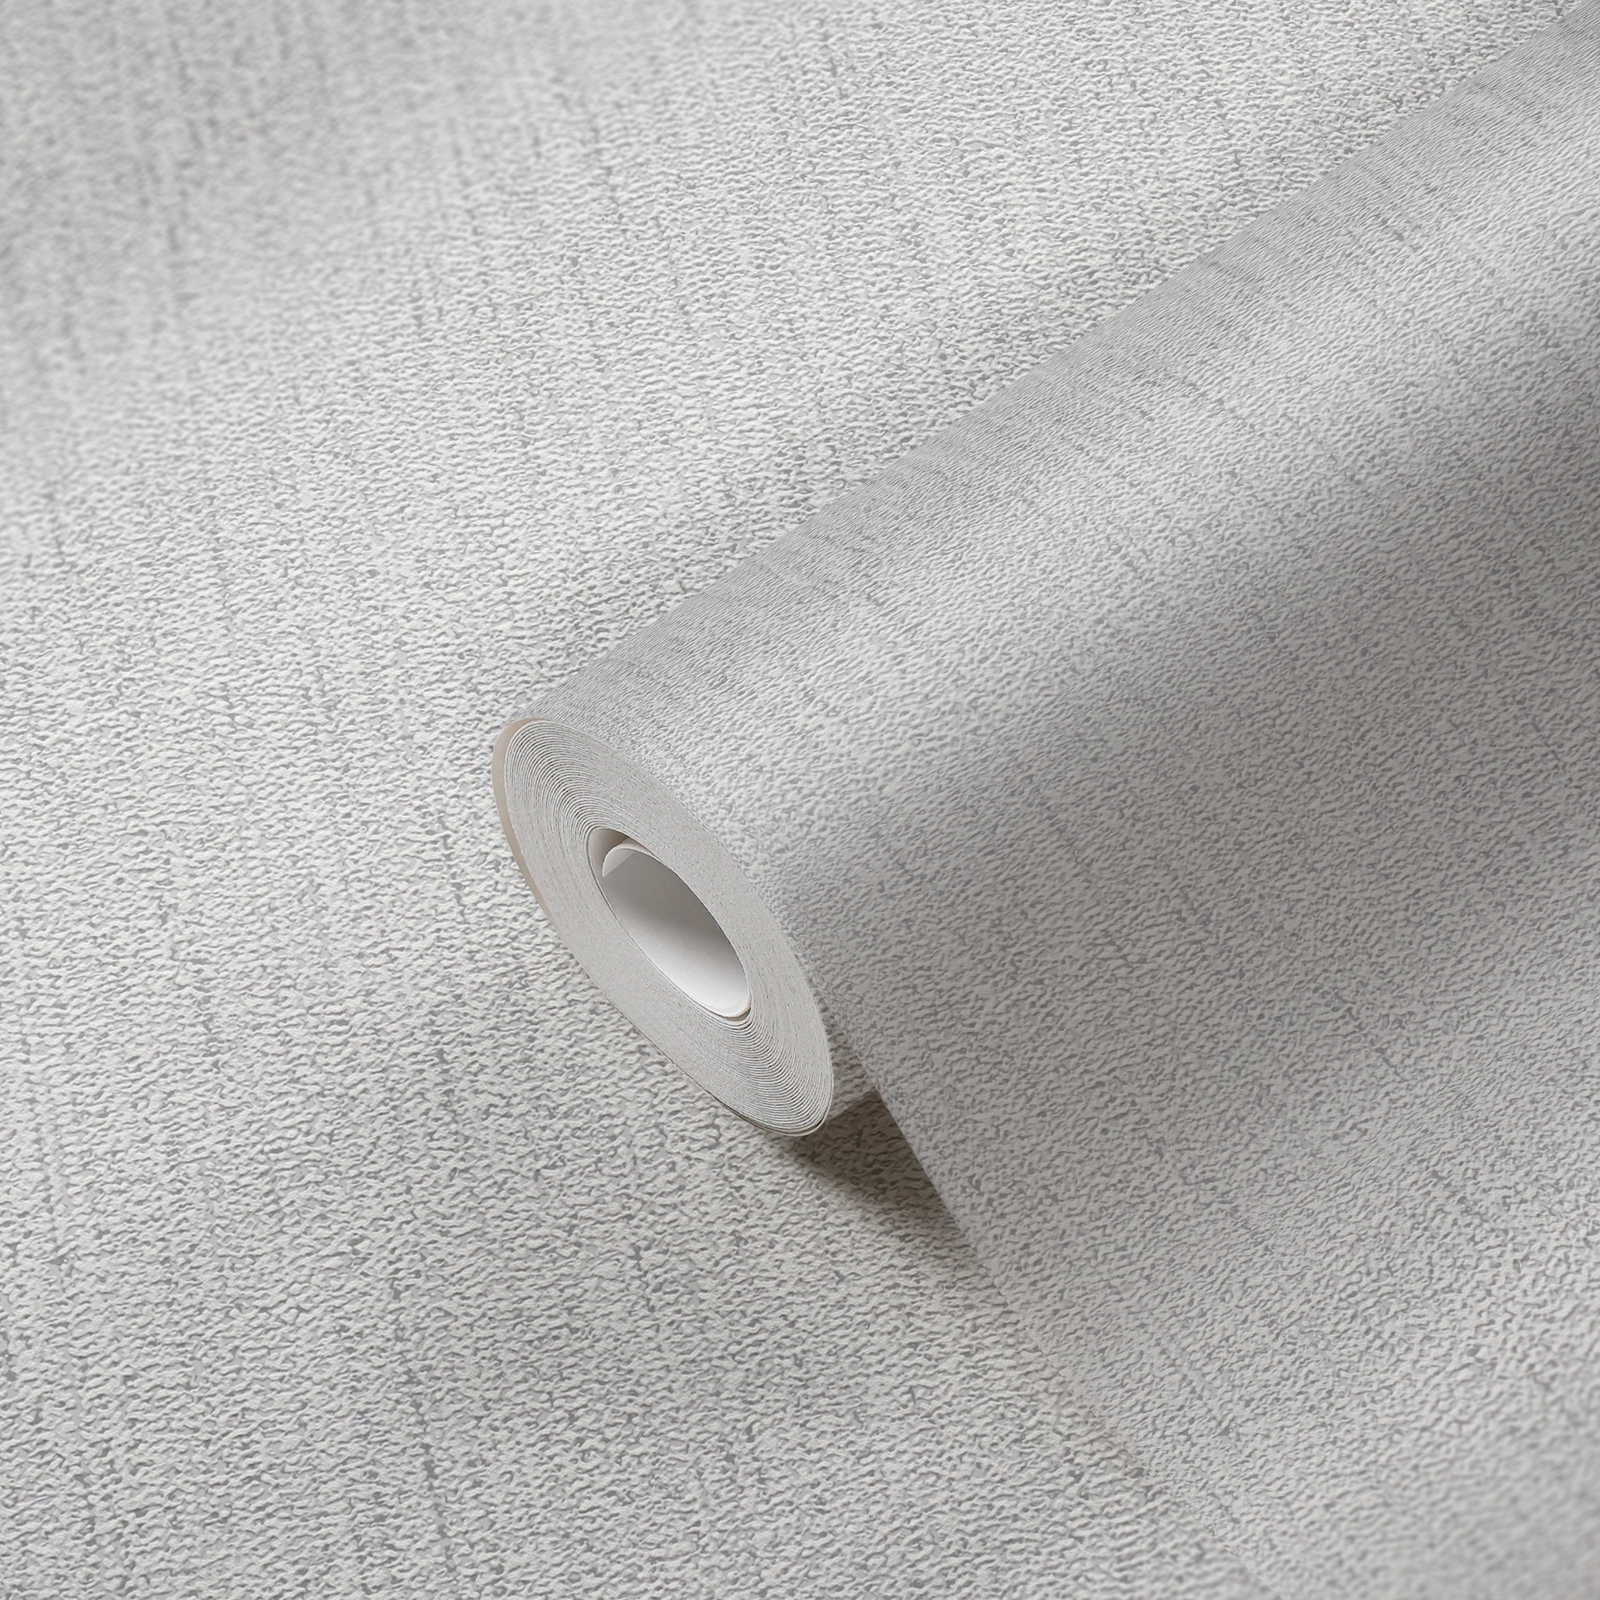             Textuurbehang met stofpatroon - lichtgrijs, zilver
        